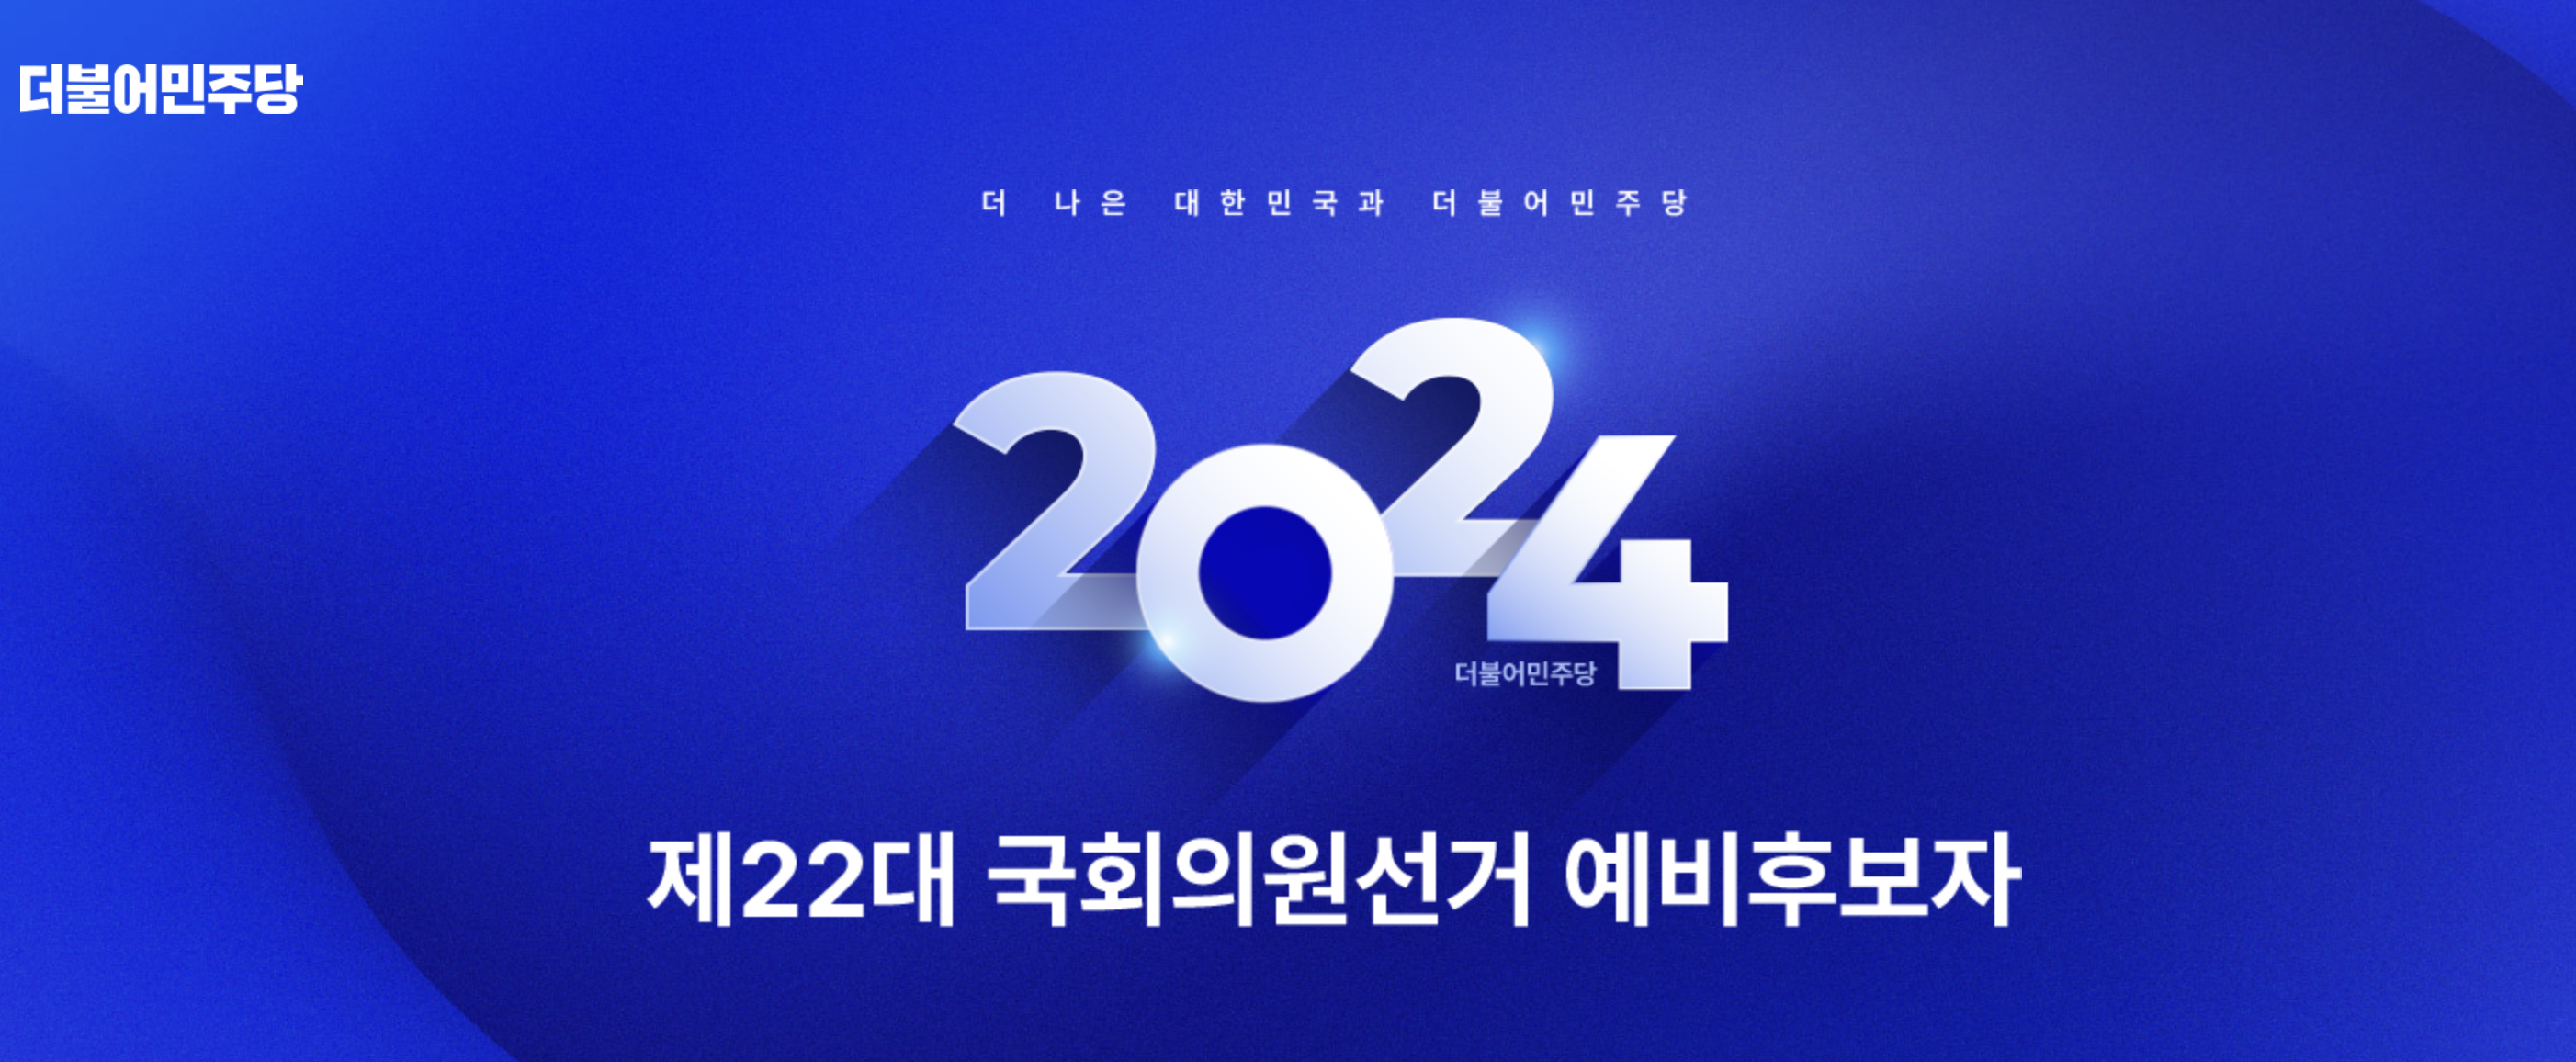 더불어민주당 - 제22대 국회의원선거 예비후보자 (https://2024.theminjoo.kr)